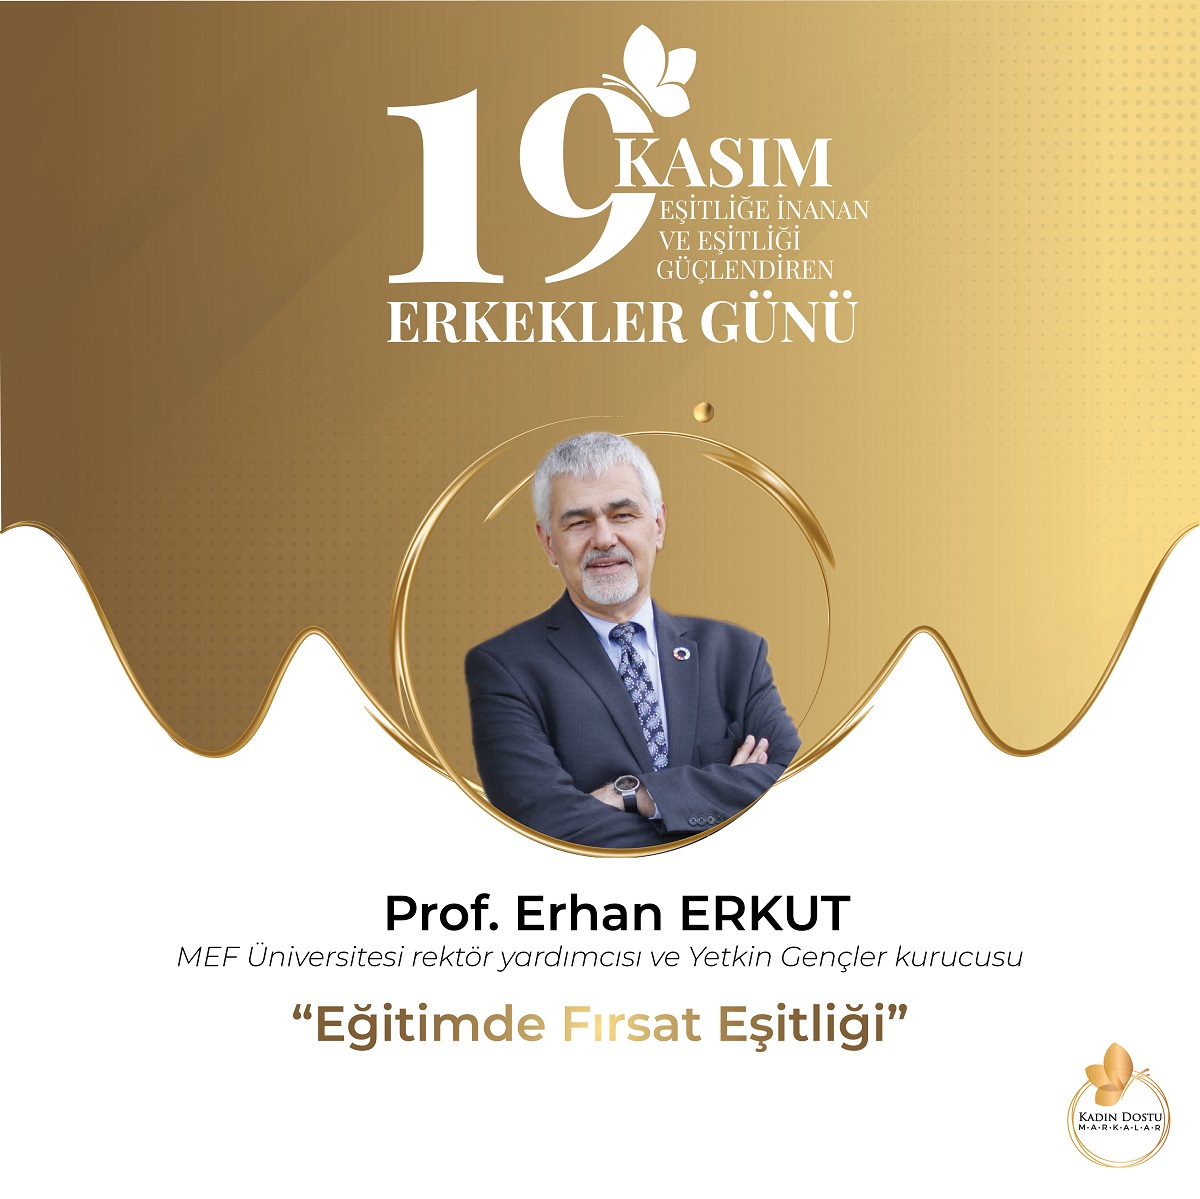 MEF Üniversitesi Rektör Yardımcısı ve Yet-Gen kurucusu Prof. Erhan ERKUT